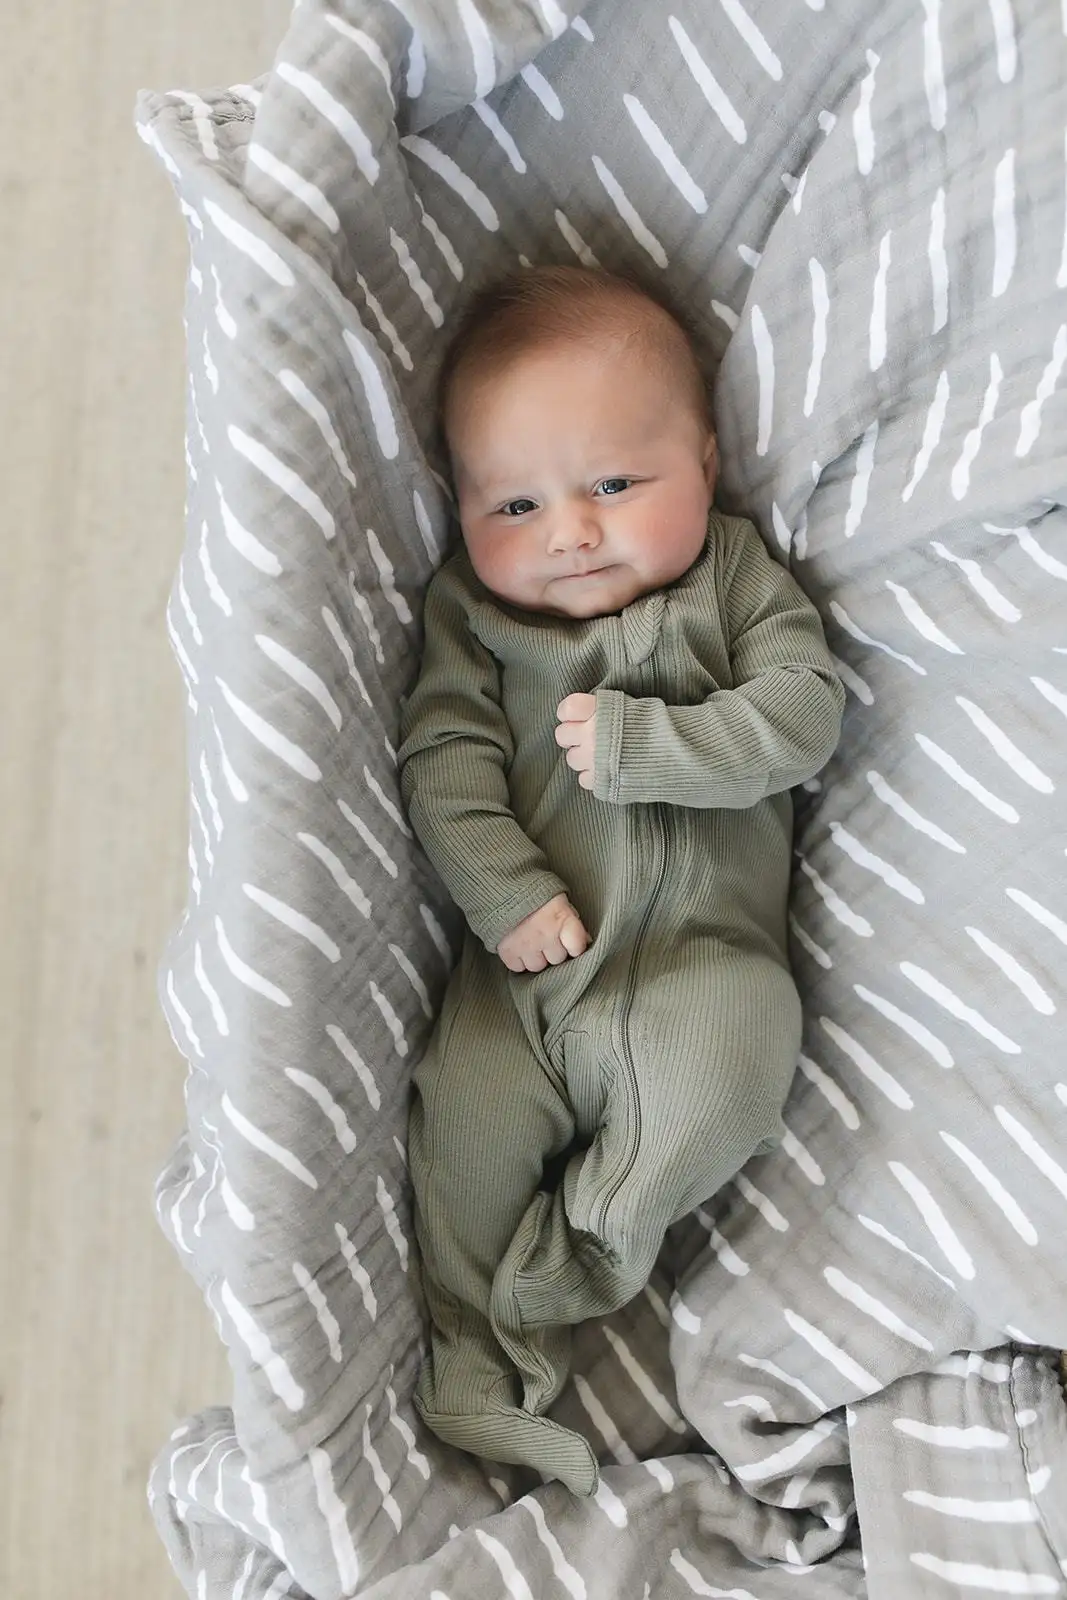 بدلة نوم قطعة واحدة للأطفال حديثي الولادة, بدلة نوم قطعة واحدة للأطفال حديثي الولادة من قطعة واحدة